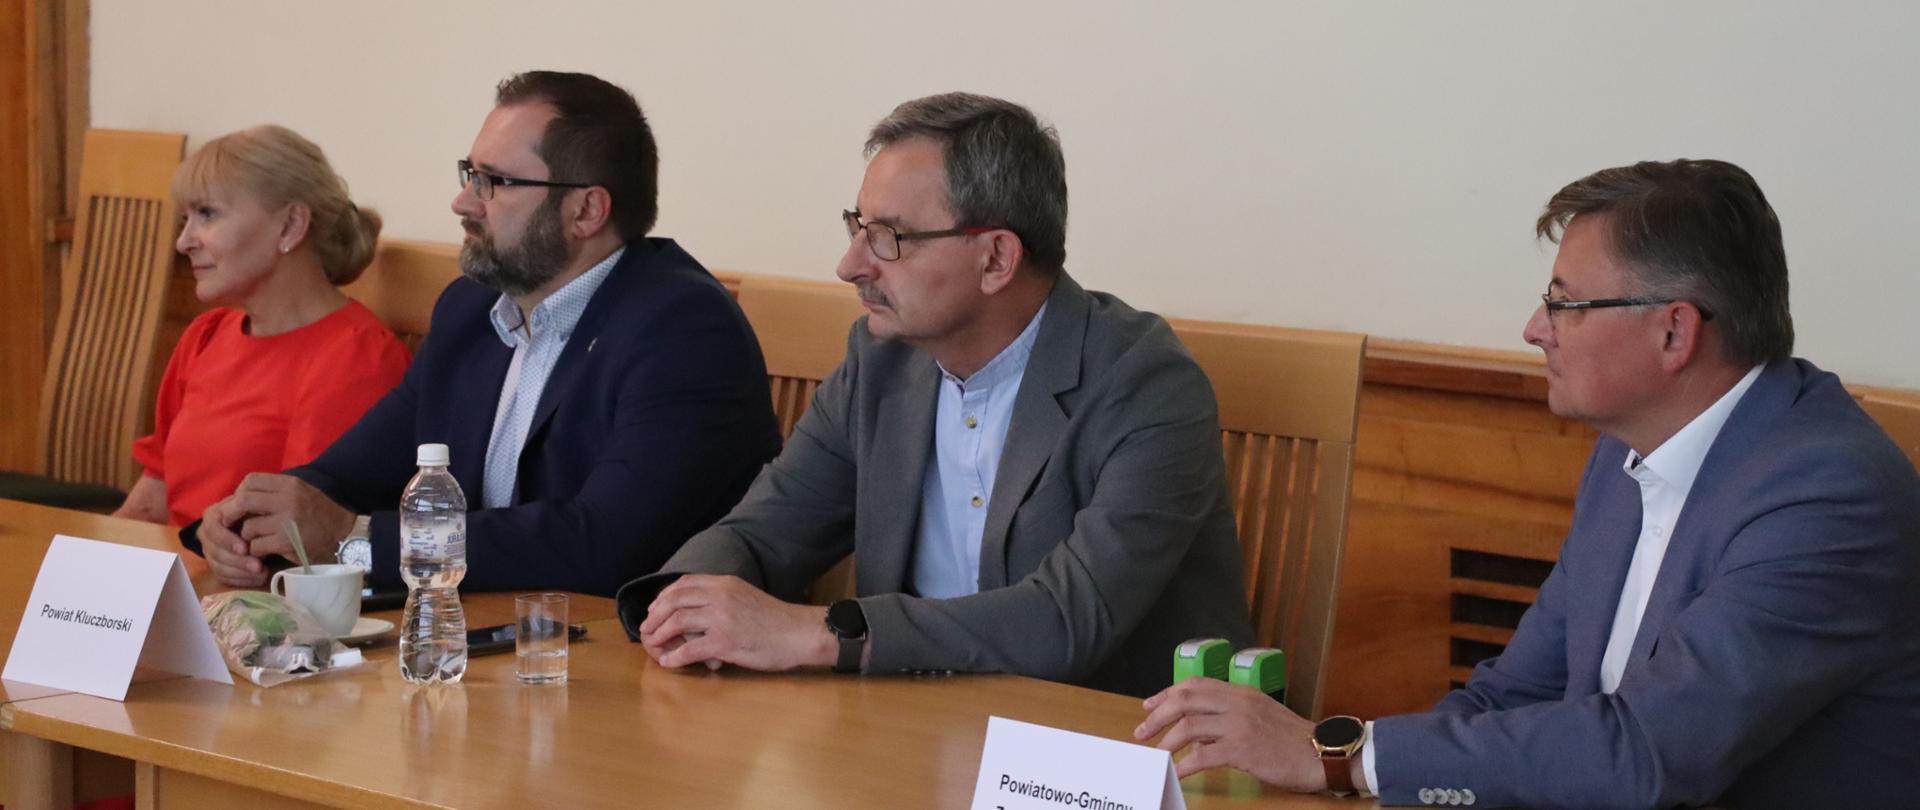 Cztery osoby siedzące przy stole. Od lewej siedzą pani wójt gminy Skoroszyce, przedstawiciele powiatu kluczborskiego i przedstawiciel Związku Transportu "Pogranicze".